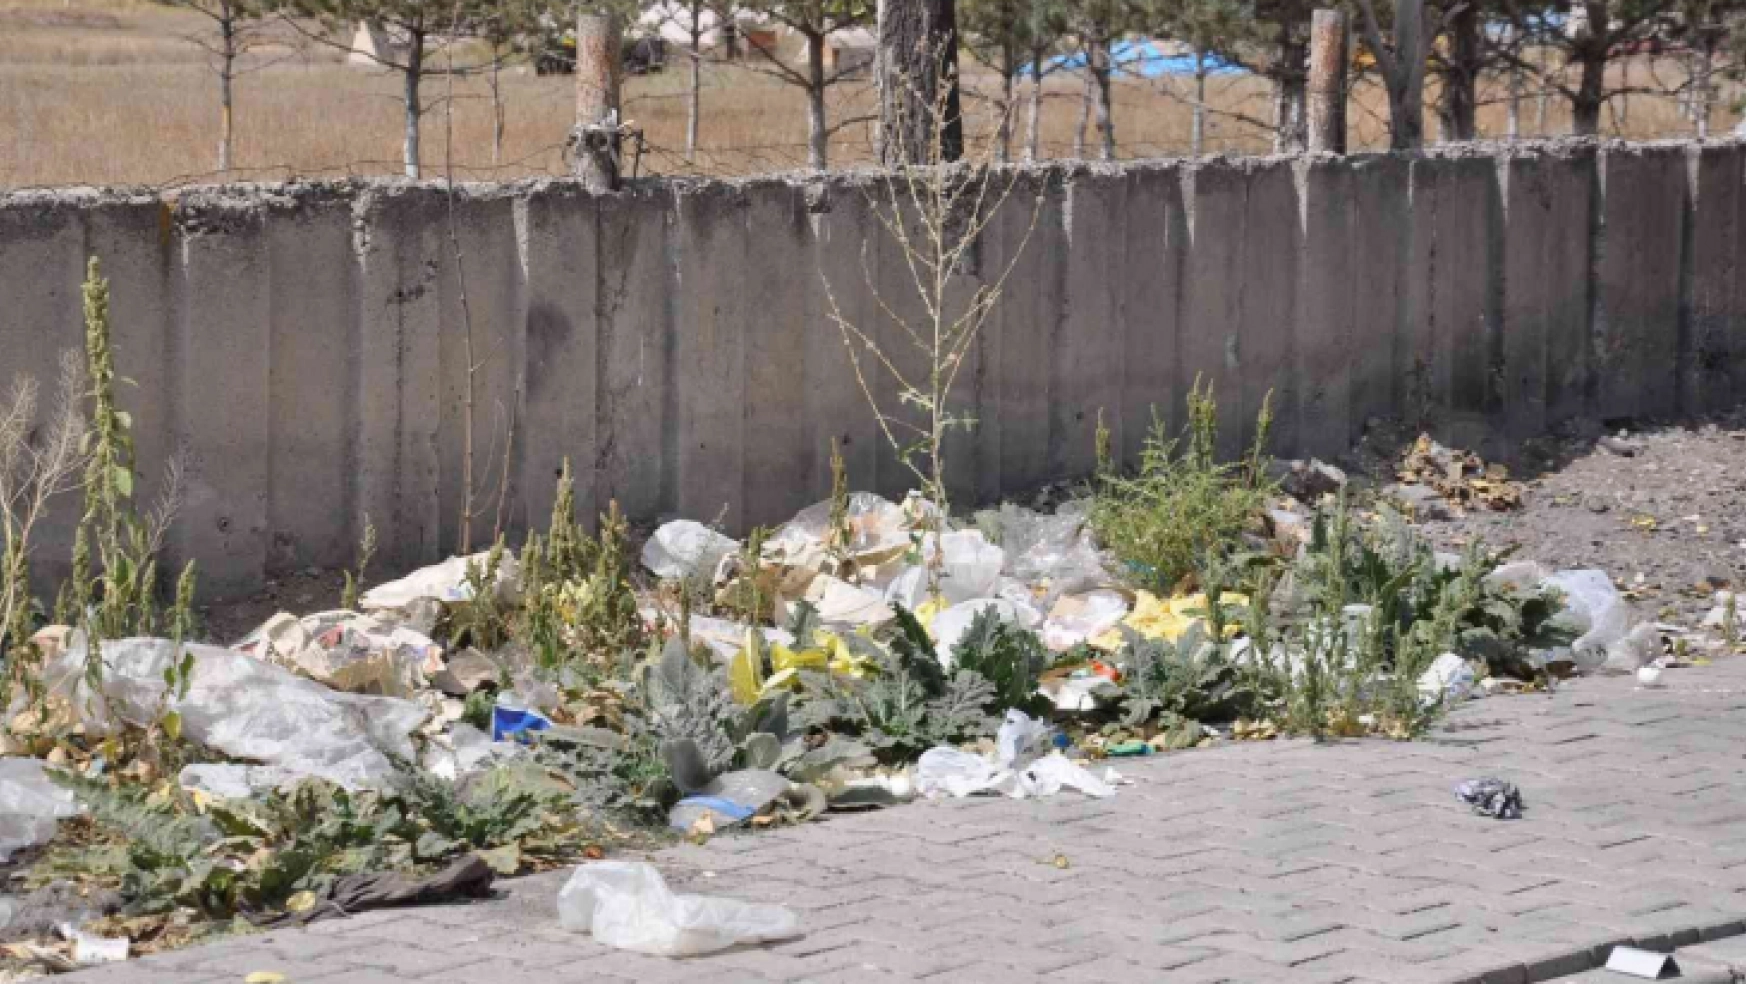 Kars'ta gelişi güzel atılan çöpler çevreyi kirletiyor